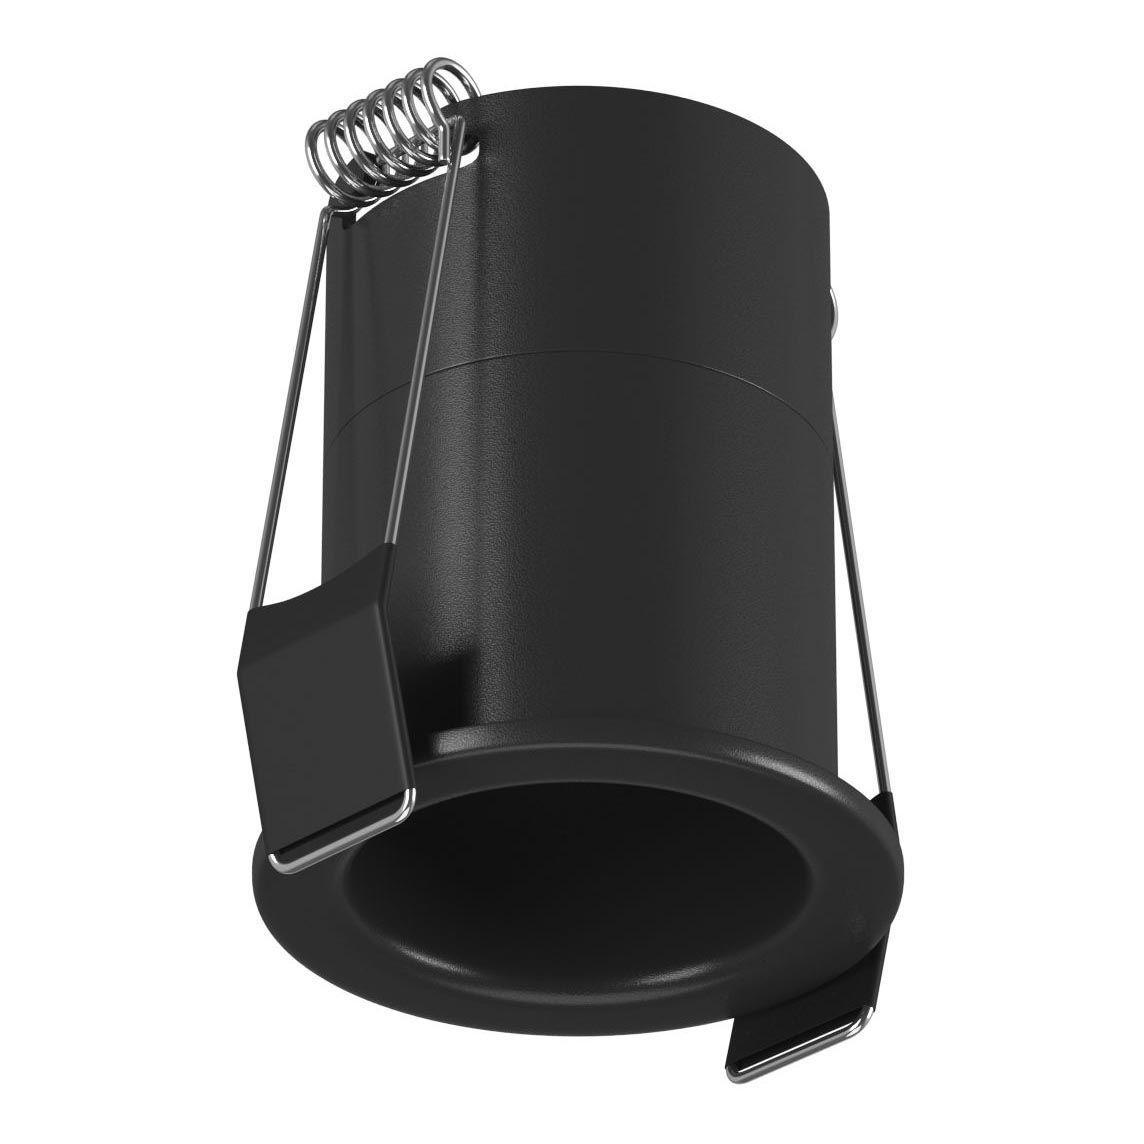 Встраиваемый светодиодный светильник DesignLed DL-A004-7-BL-WW 006639 рюкзак peak design everyday zip 20l v2 0 чёрный bedbz 20 bk 2